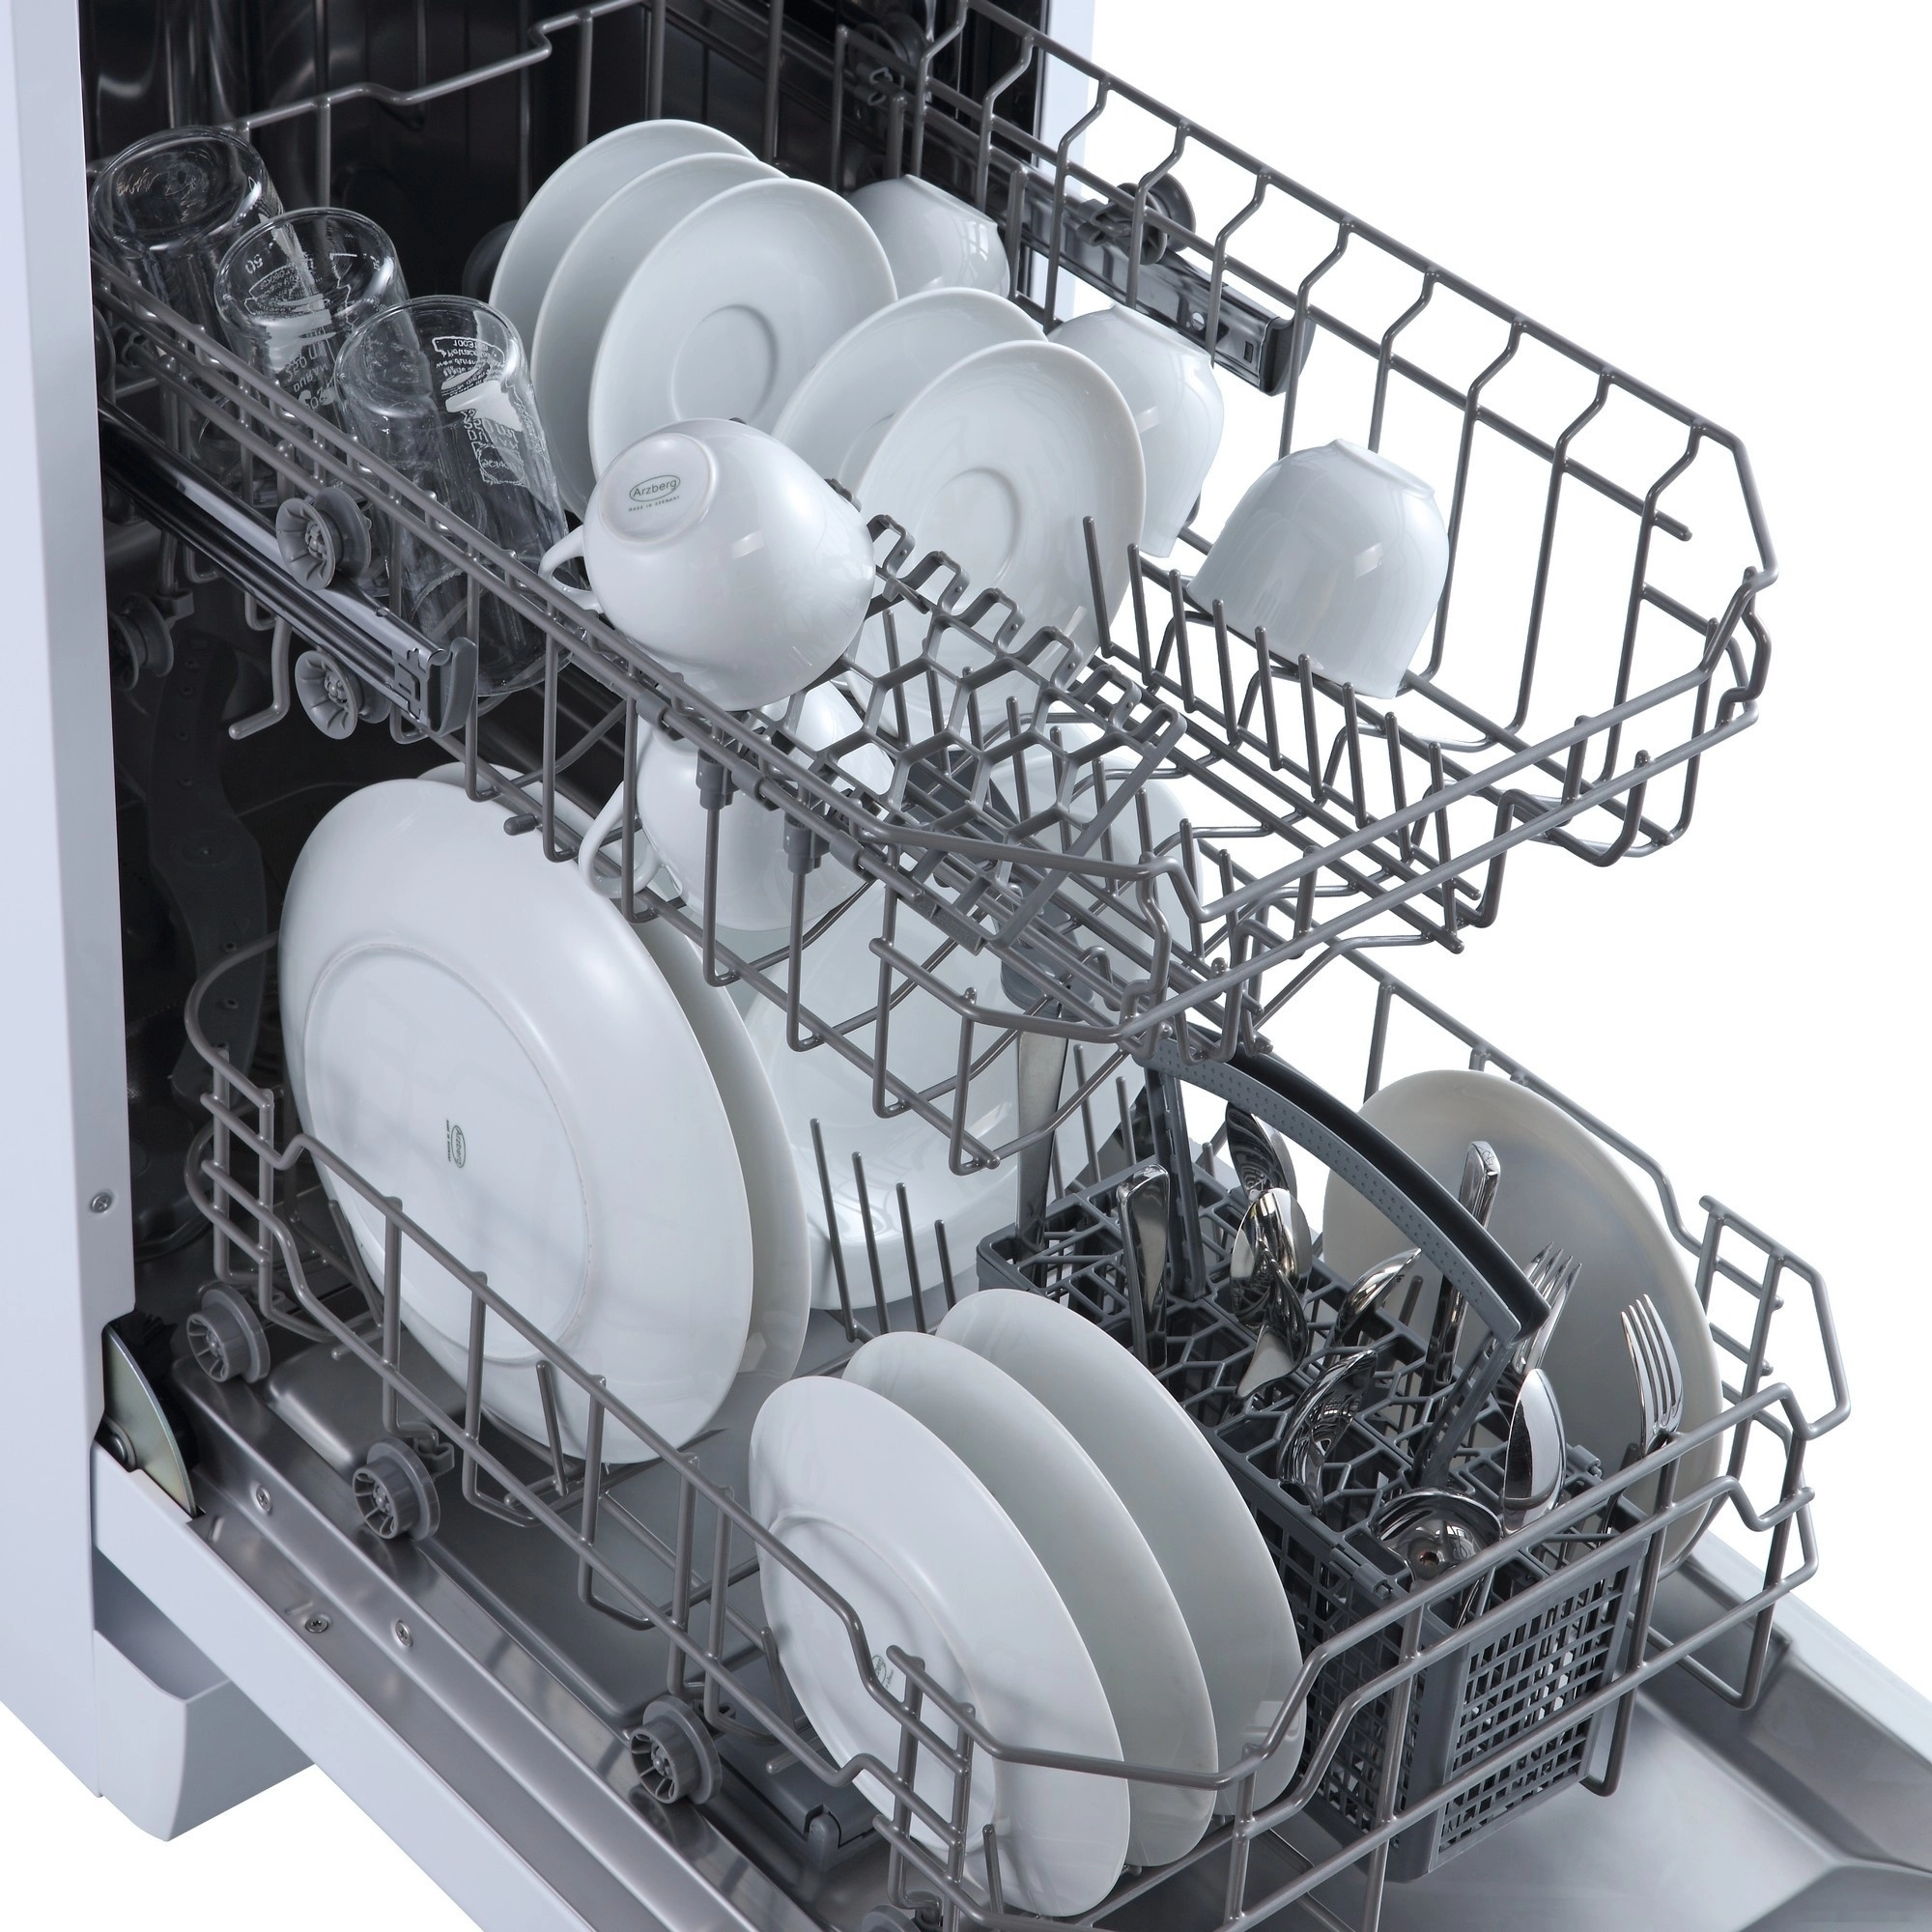 Отдельностоящая посудомоечная машина Бирюса DWF-409/6 W